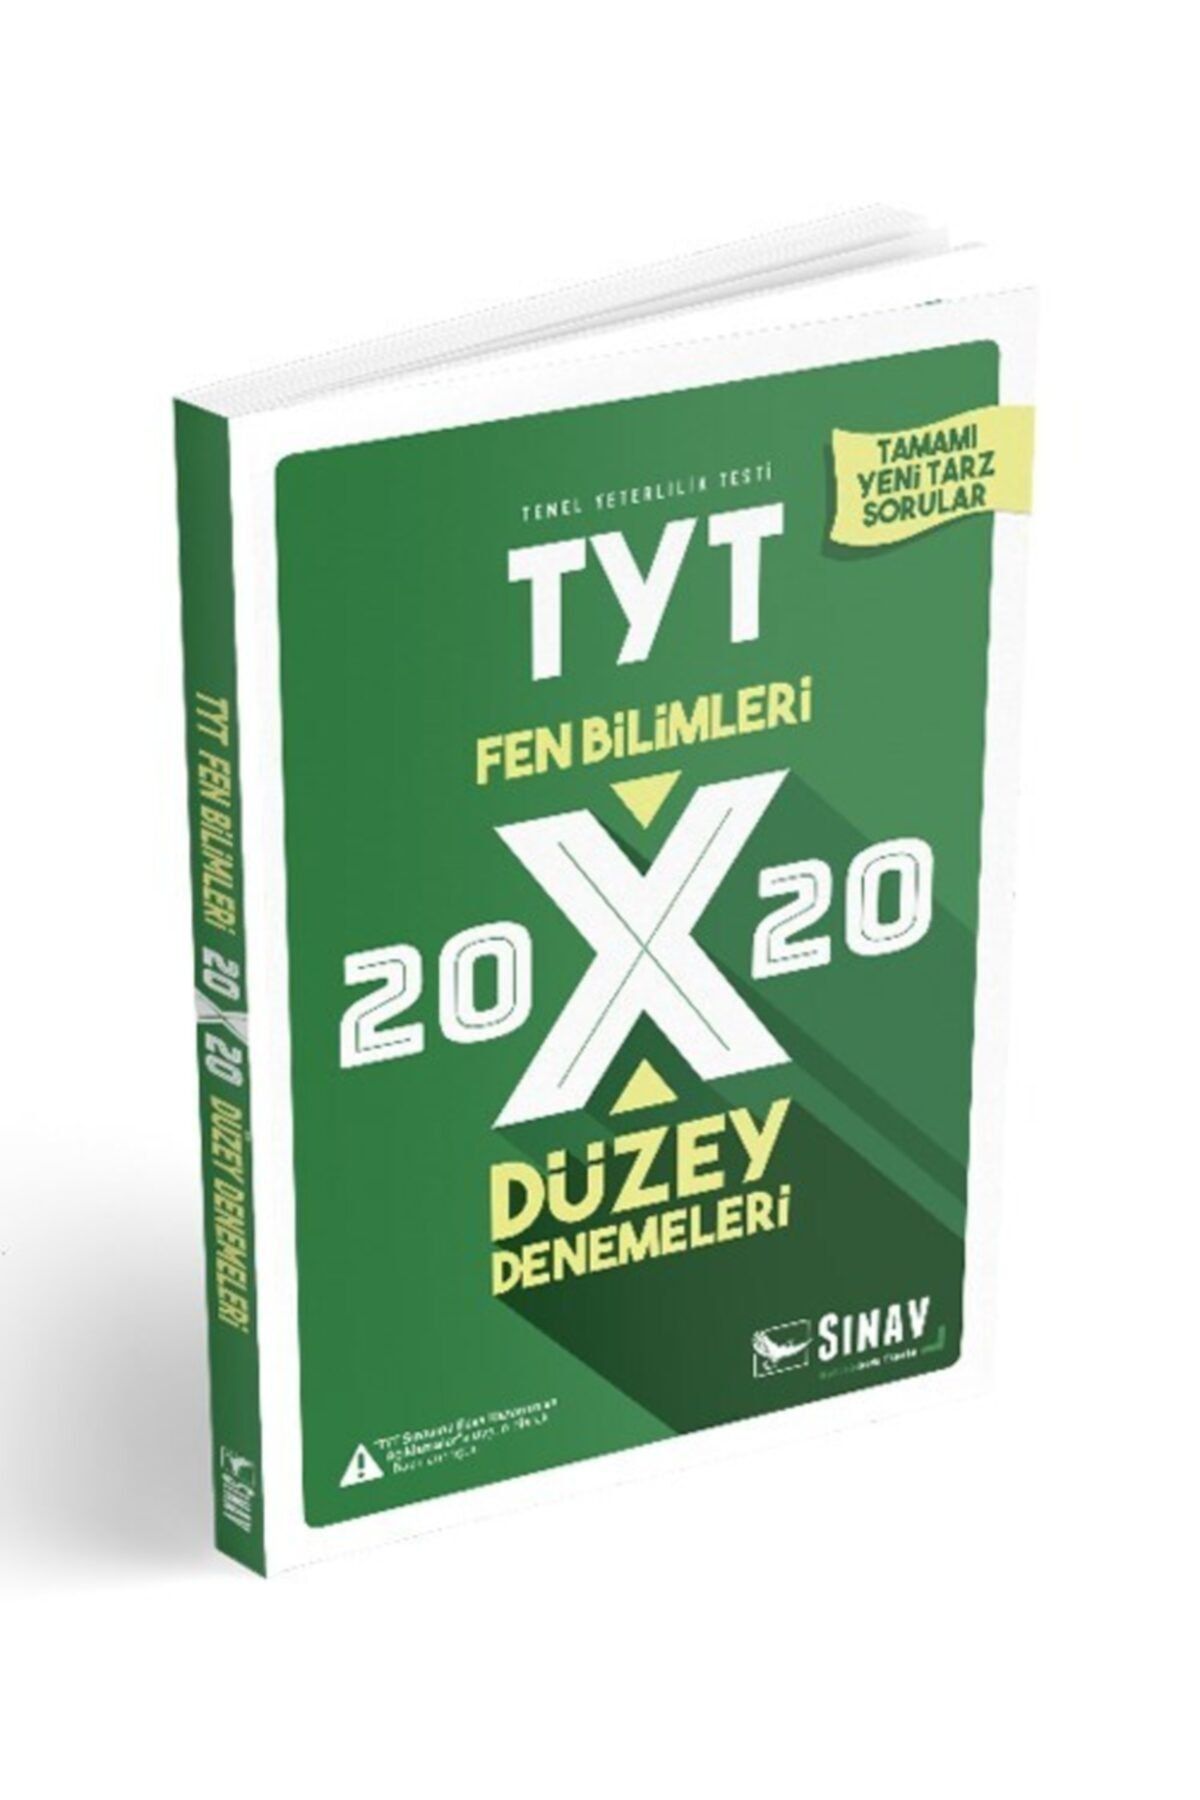 Sınav Yayınları Tyt Fen Bilimleri 20x20 Düzey Denemeleri